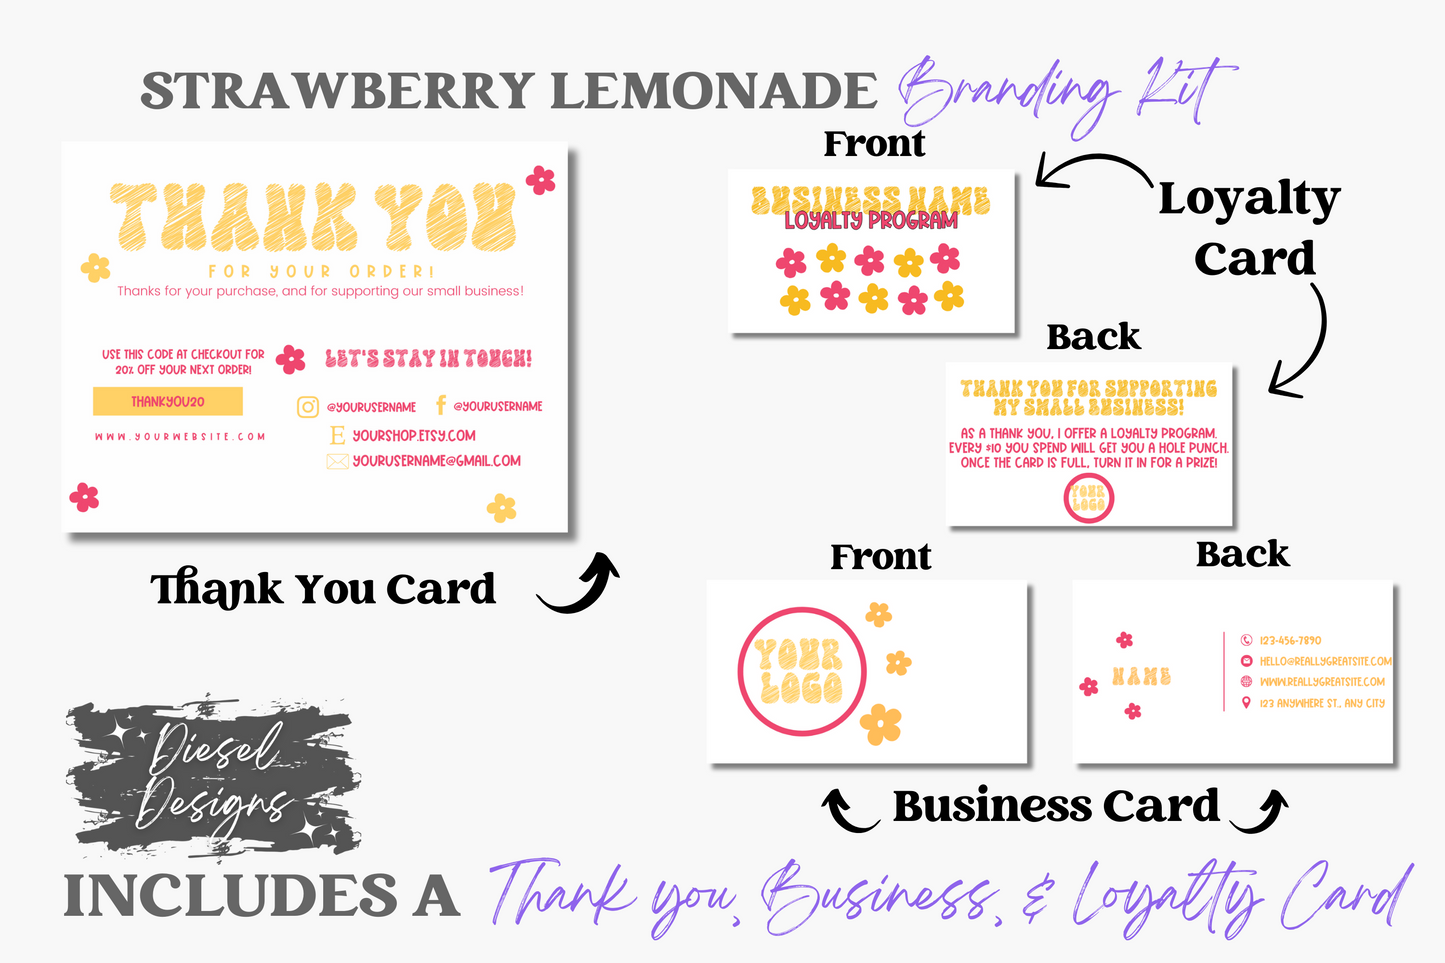 Strawberry Lemonade Branding Kit | Website Kit | Business Card | Logo | Facebook Cover | Editable in Canva